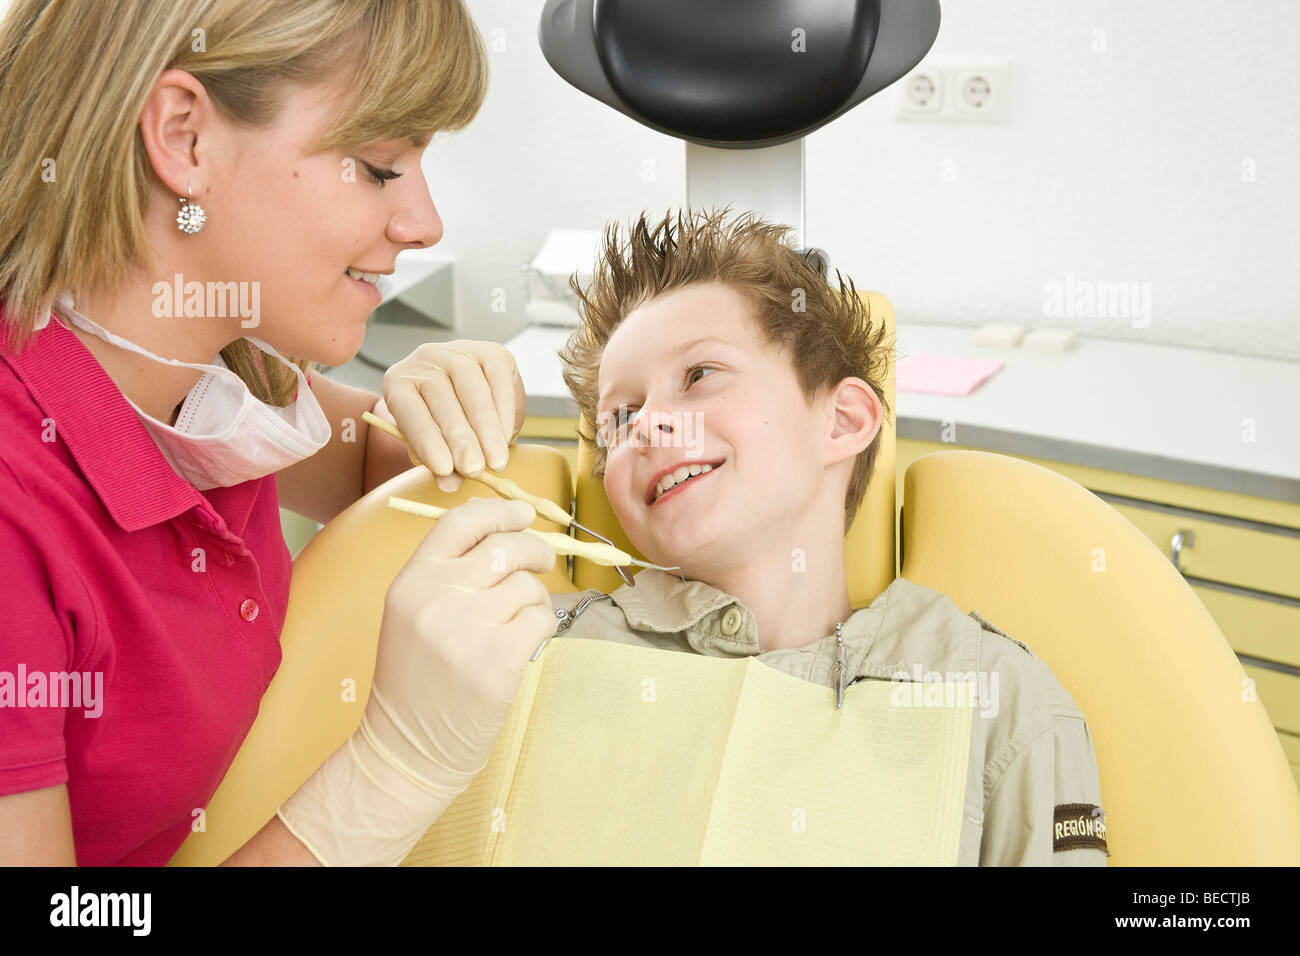 Dental nurse checking a boy's teeth Stock Photo